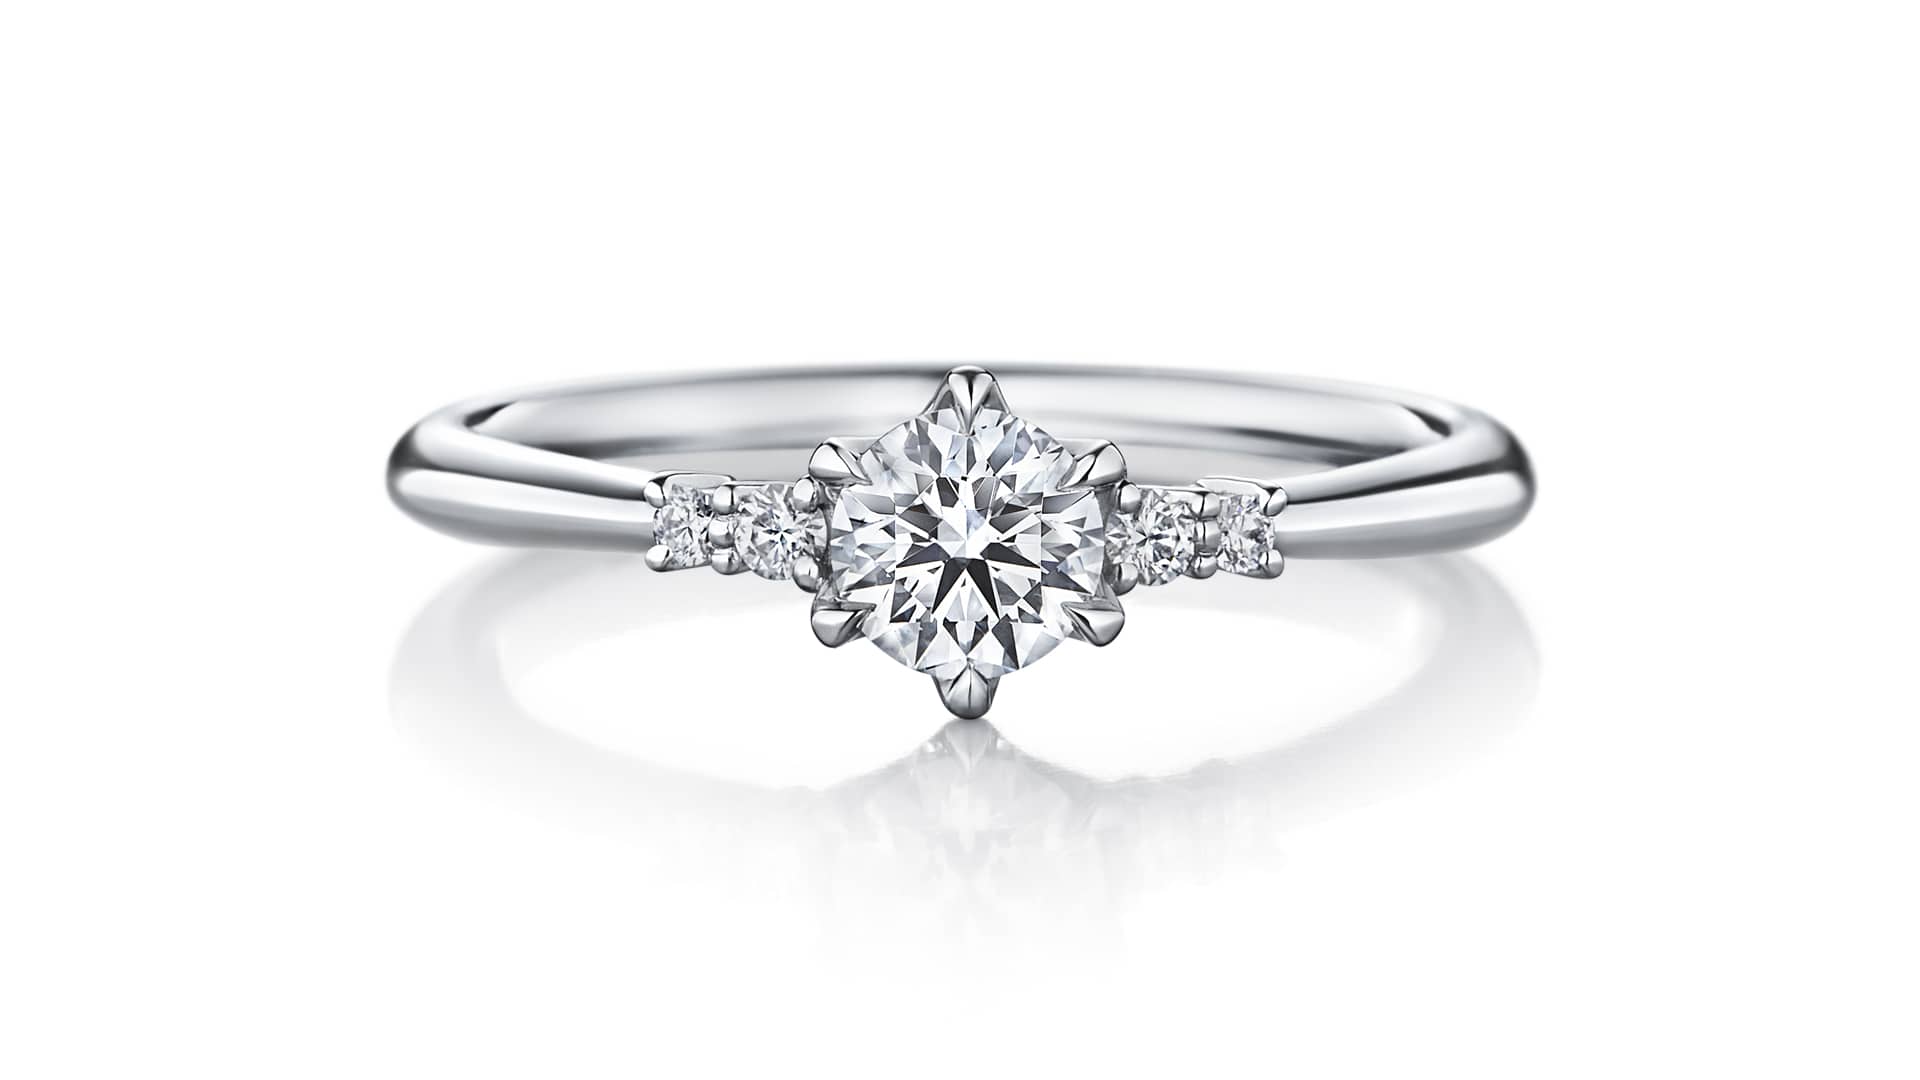 アイプリモの結婚指輪 婚約指輪が人気 評判 値段など徹底解説 結婚指輪人気ランキング Willmari